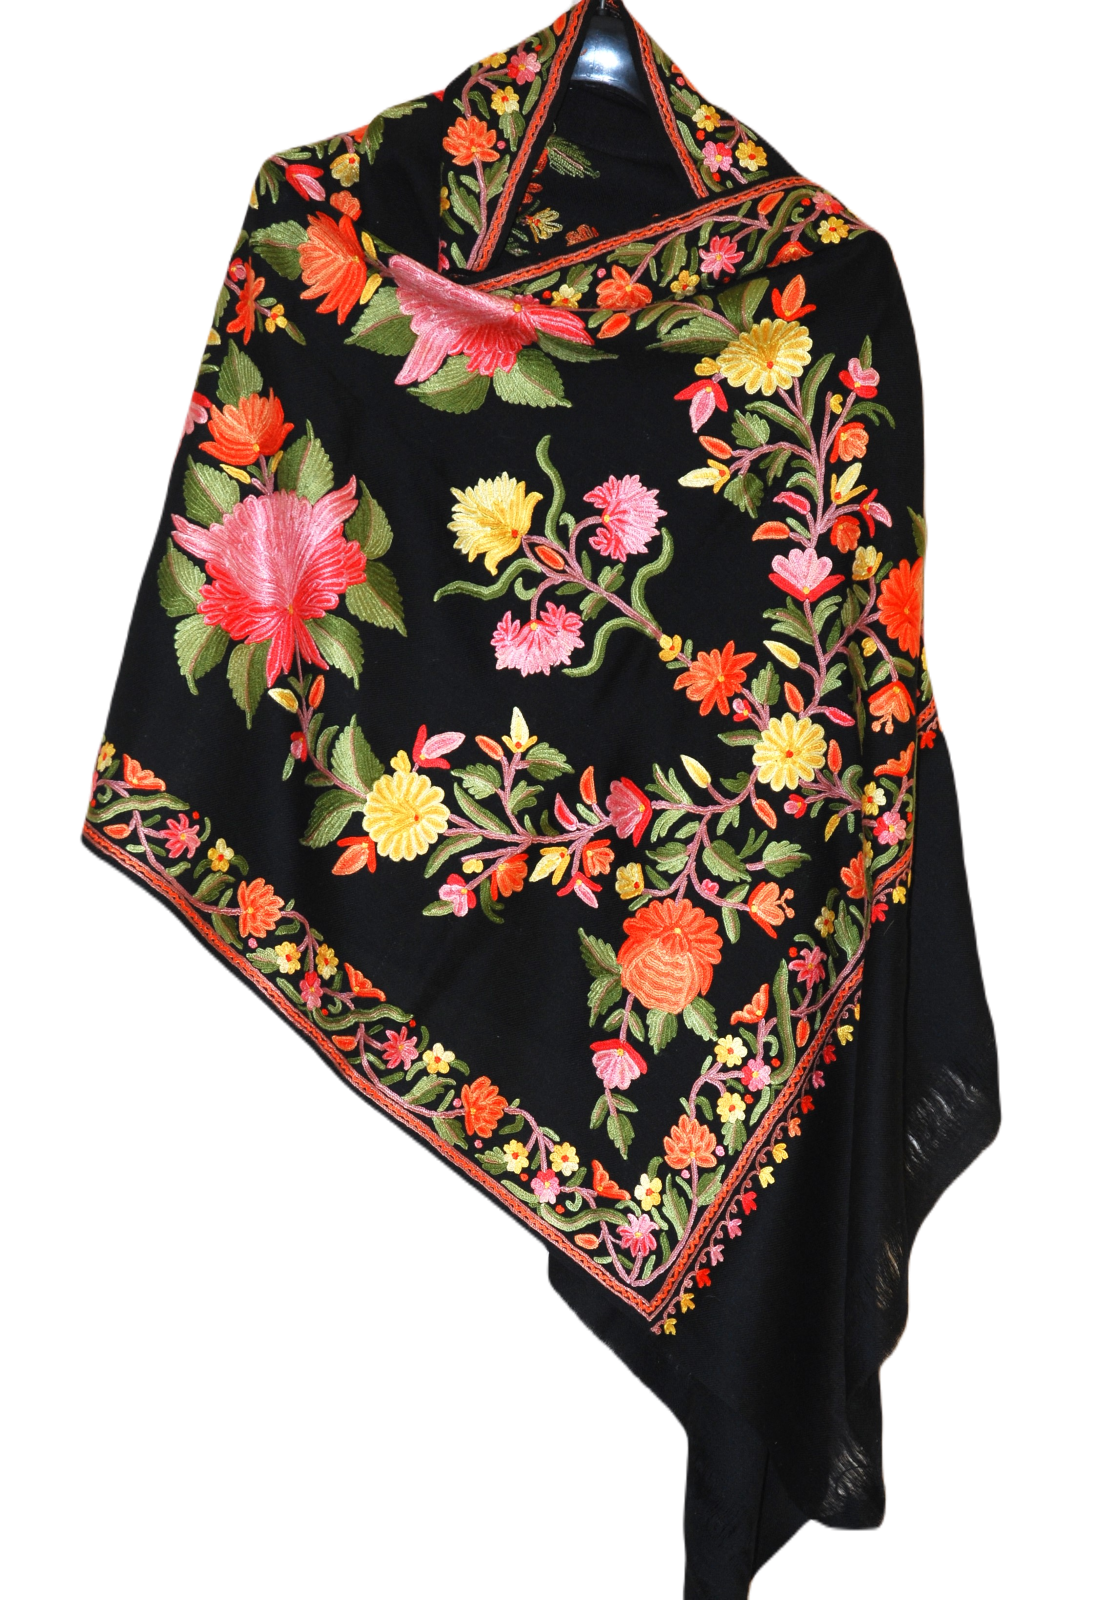 Kashmir Wool Shawl Wrap Throw Black, Multicolor Embroidery #WS-153